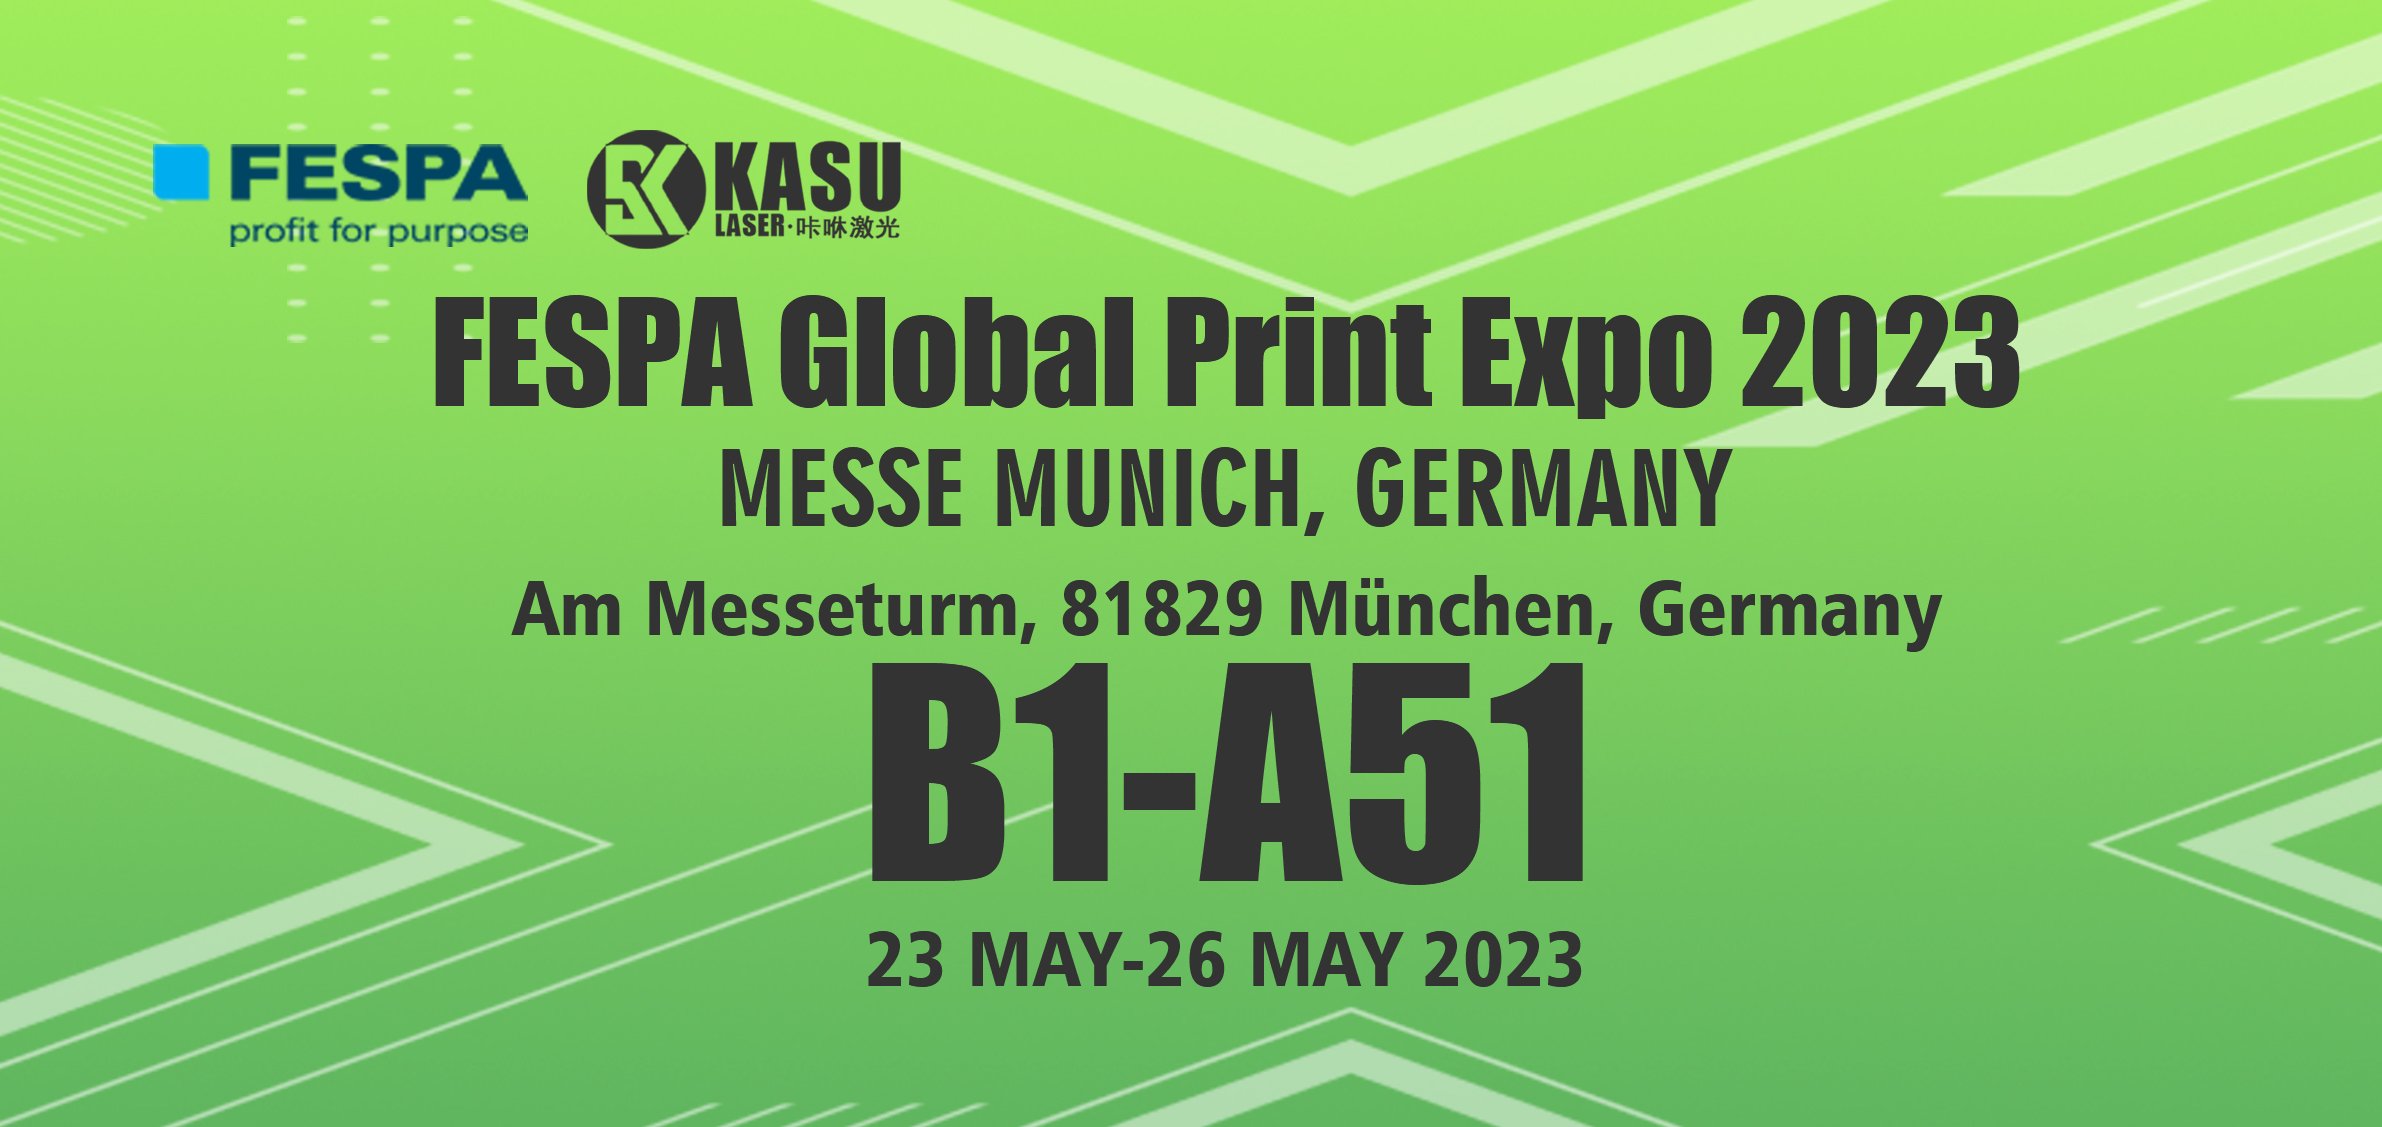 FESPA-Global-Print-Expo-2023